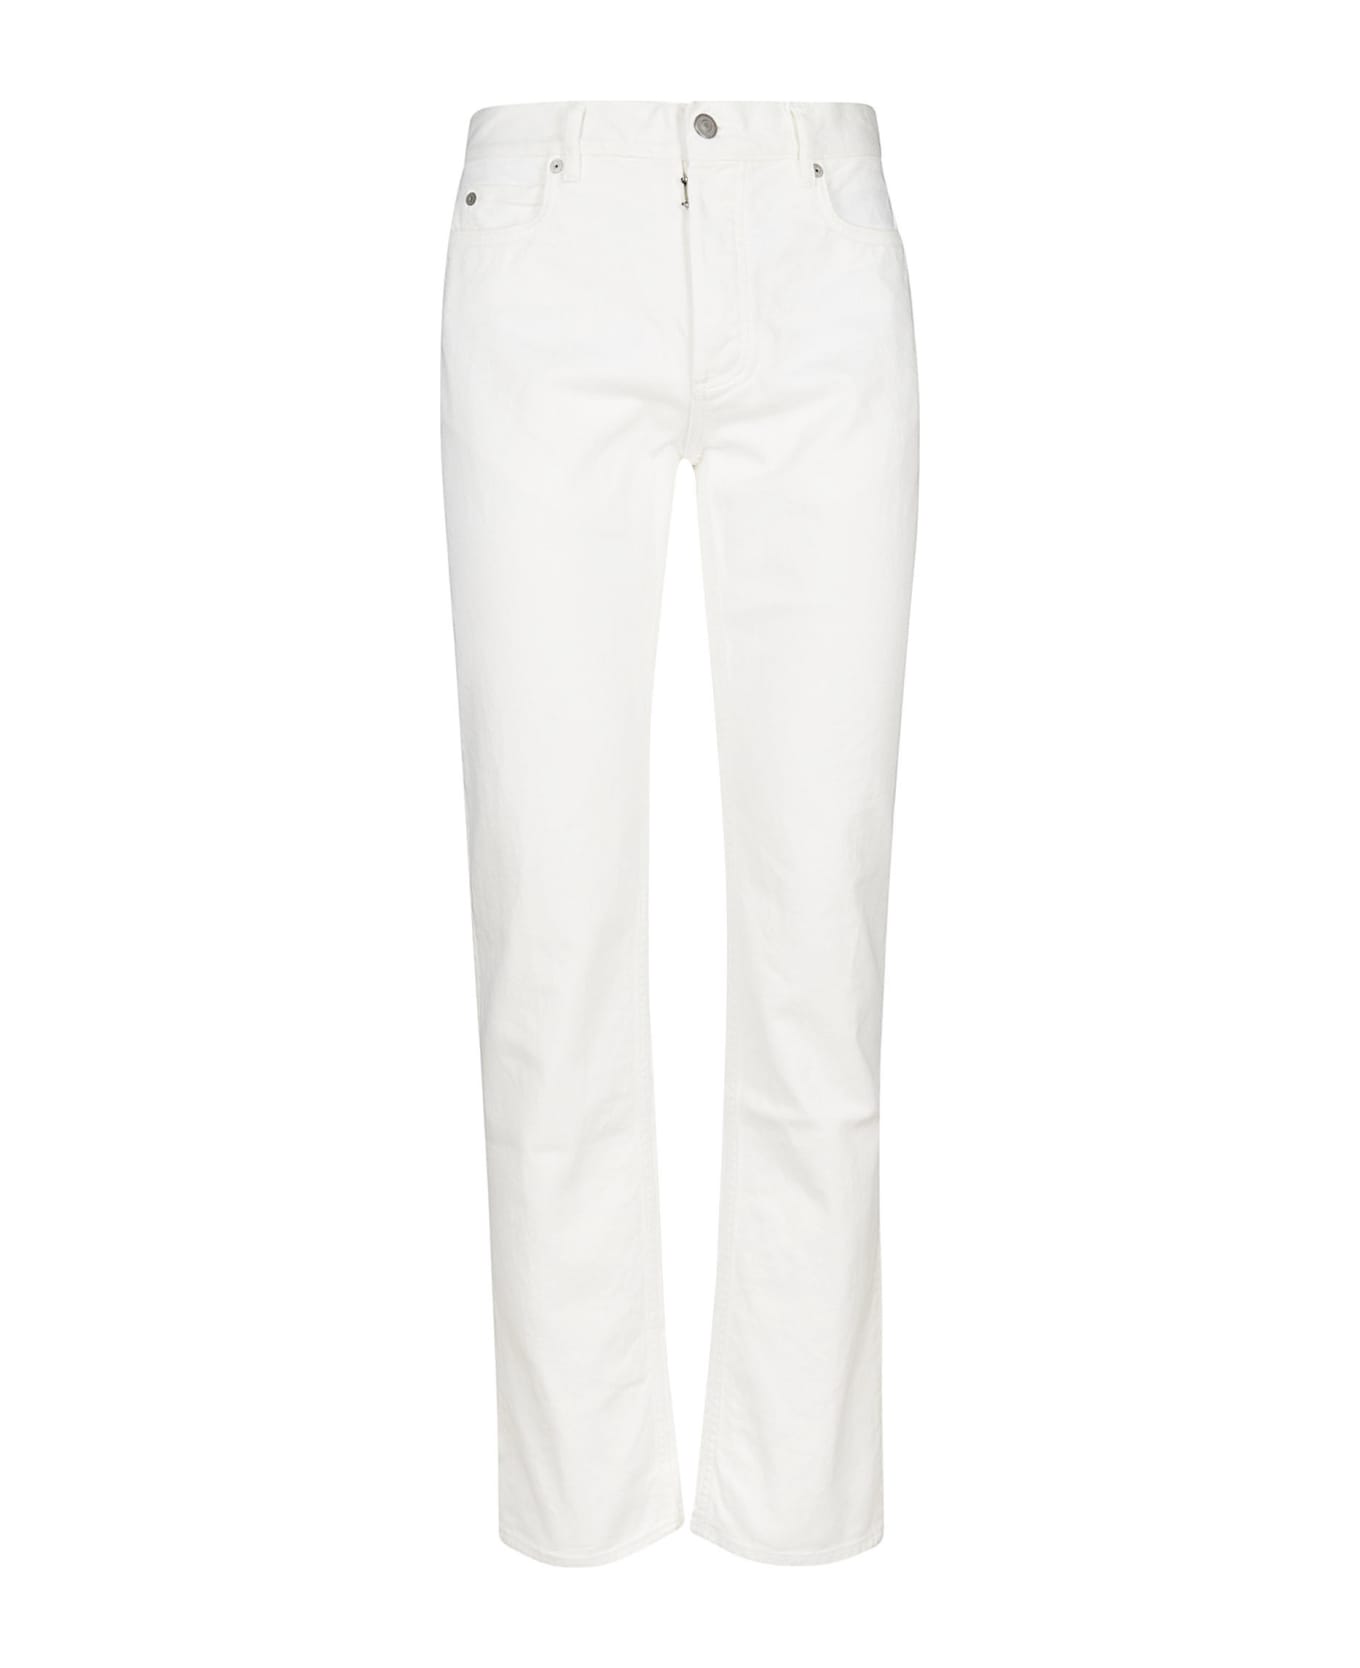 Maison Margiela Waist Fit Jeans - White